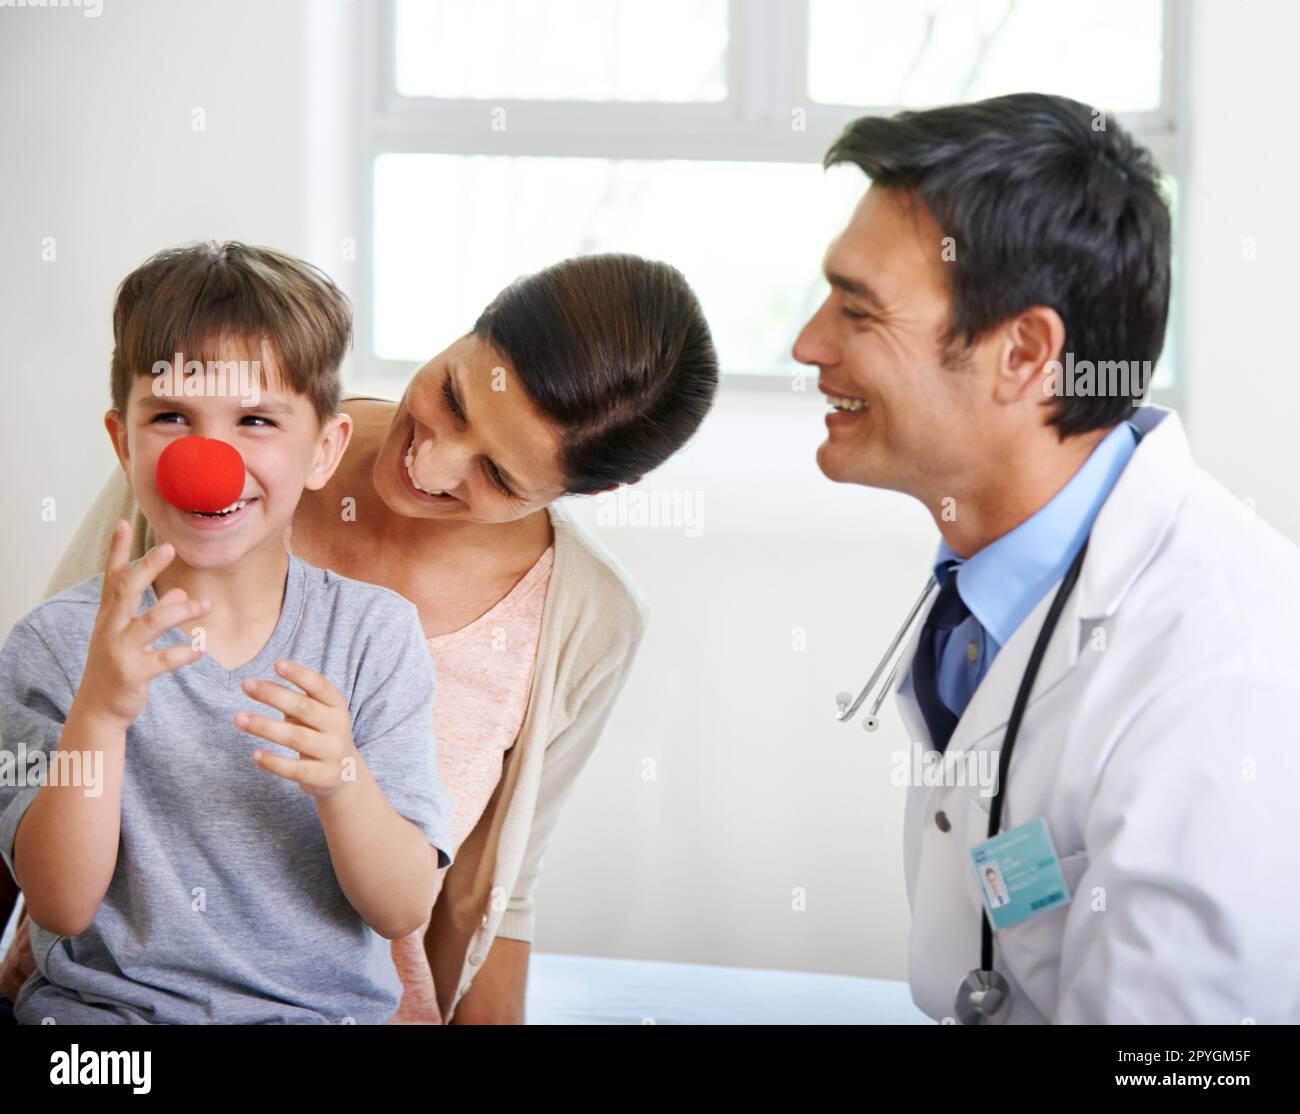 Le premier signe de la grippe est un nez rouge. un jeune garçon mignon jouant avec un nez clowns dans la salle des médecins. Banque D'Images